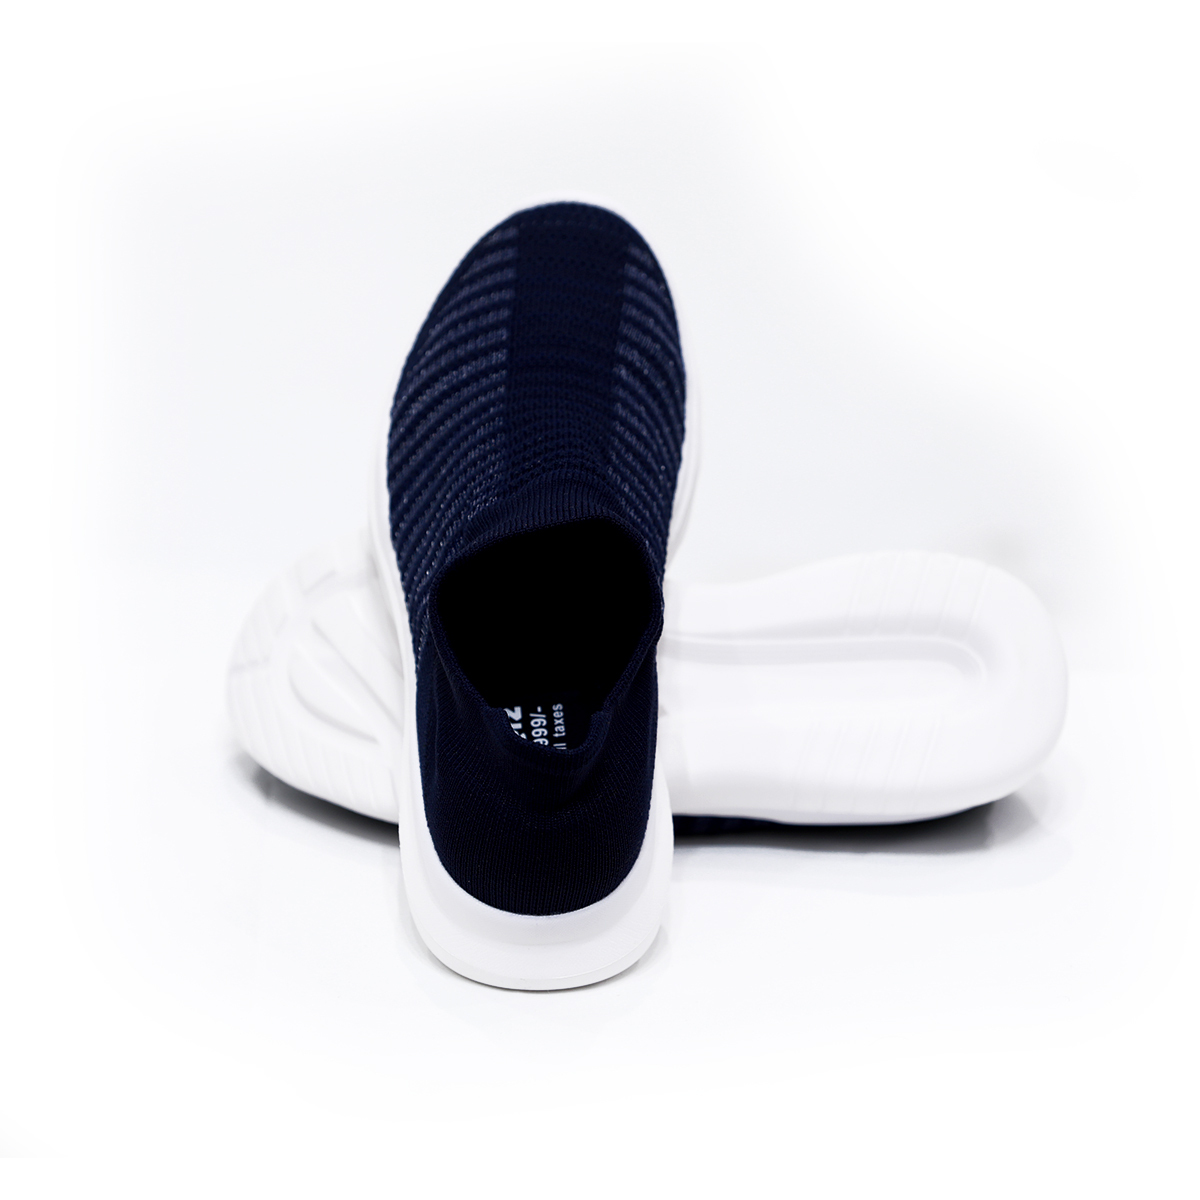 Buy Bonkerz Ladies Casual Shoe SWB-1094 Nvy Online - Lulu Hypermarket India